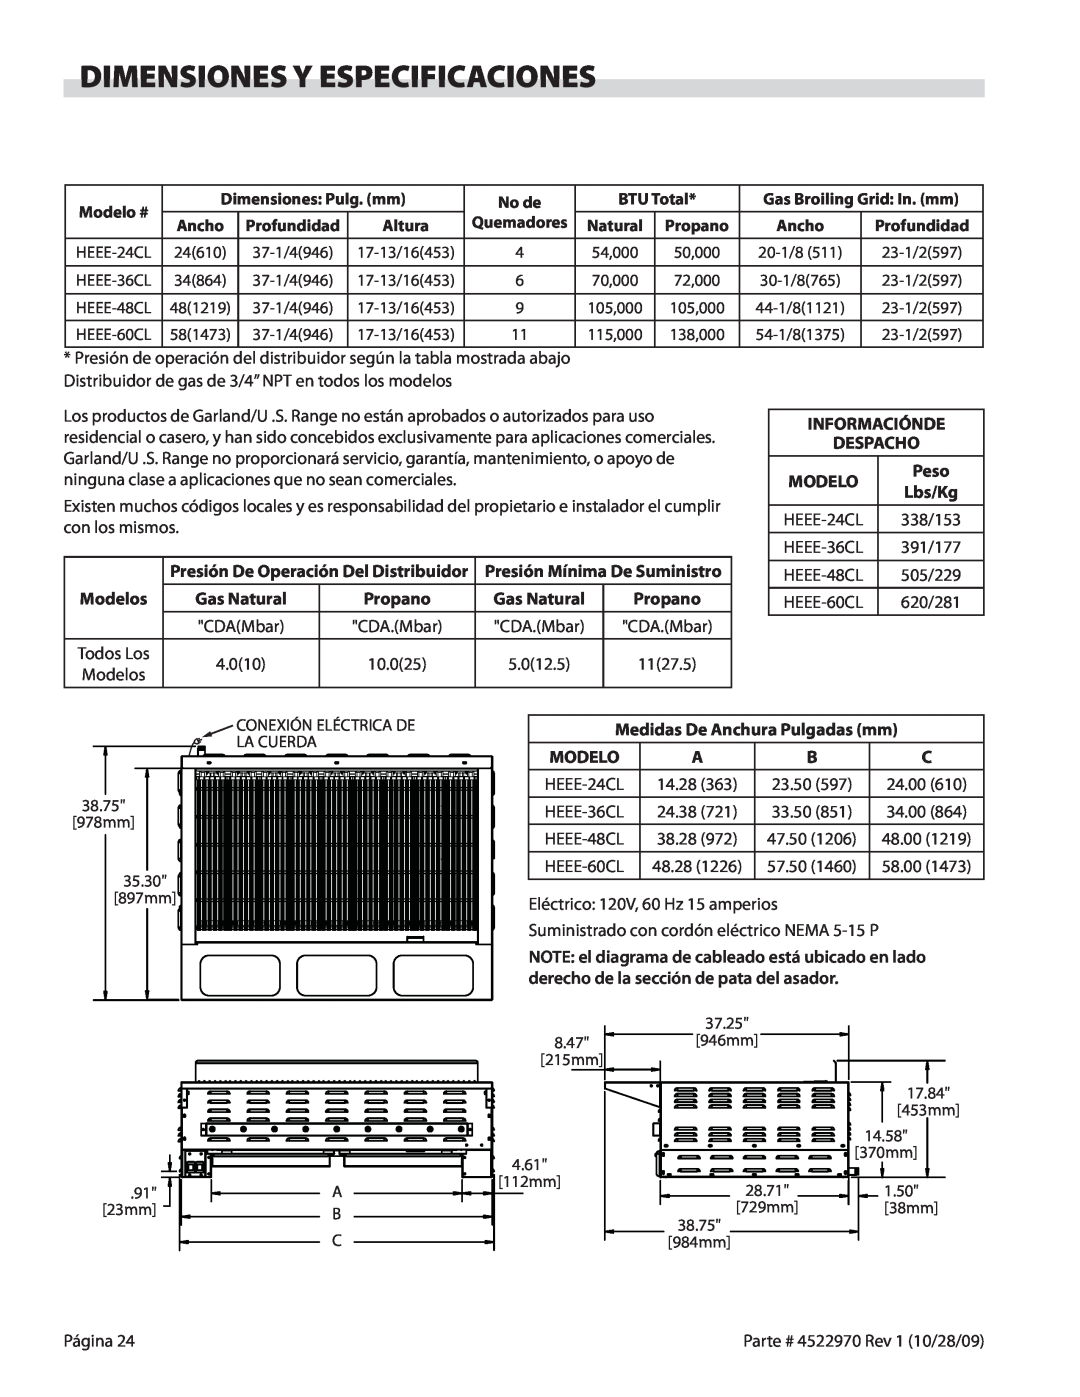 Garland 4522970 REV 1 operation manual Dimensiones Y Especificaciones, Peso 